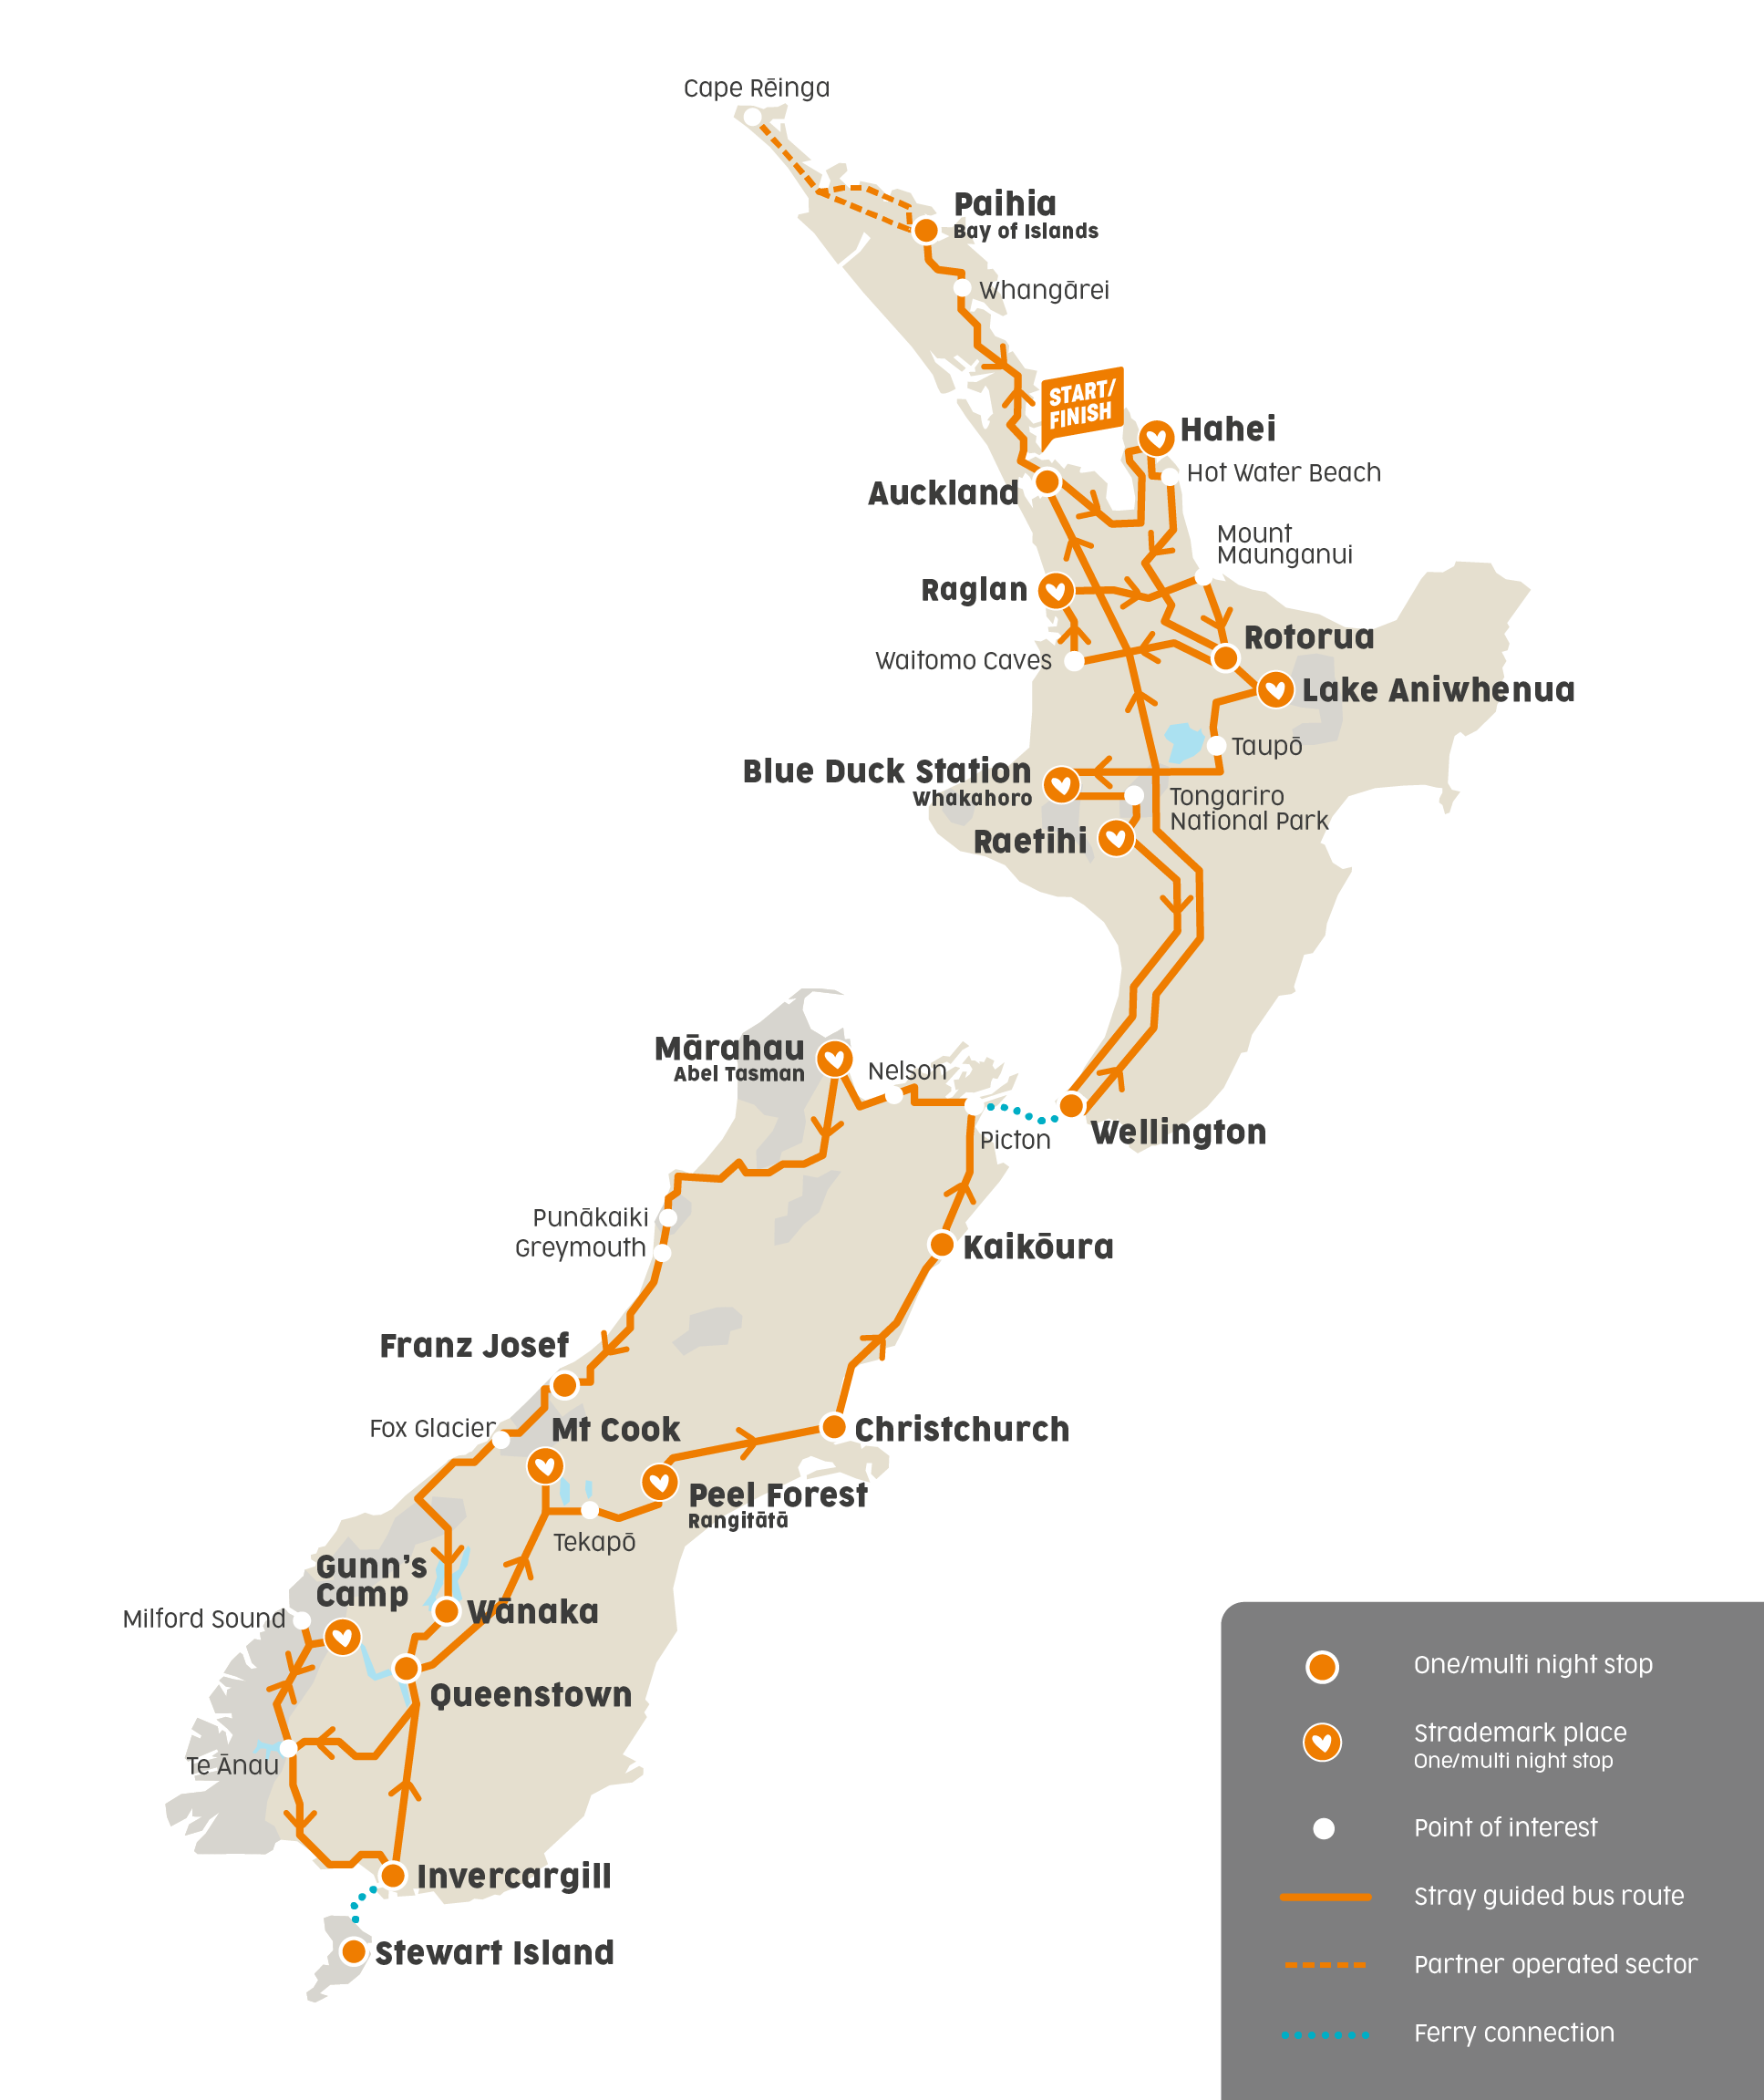 新西兰 全境巴士票 Intercity Flexi pass小时票,马蜂窝自由行 - 马蜂窝自由行